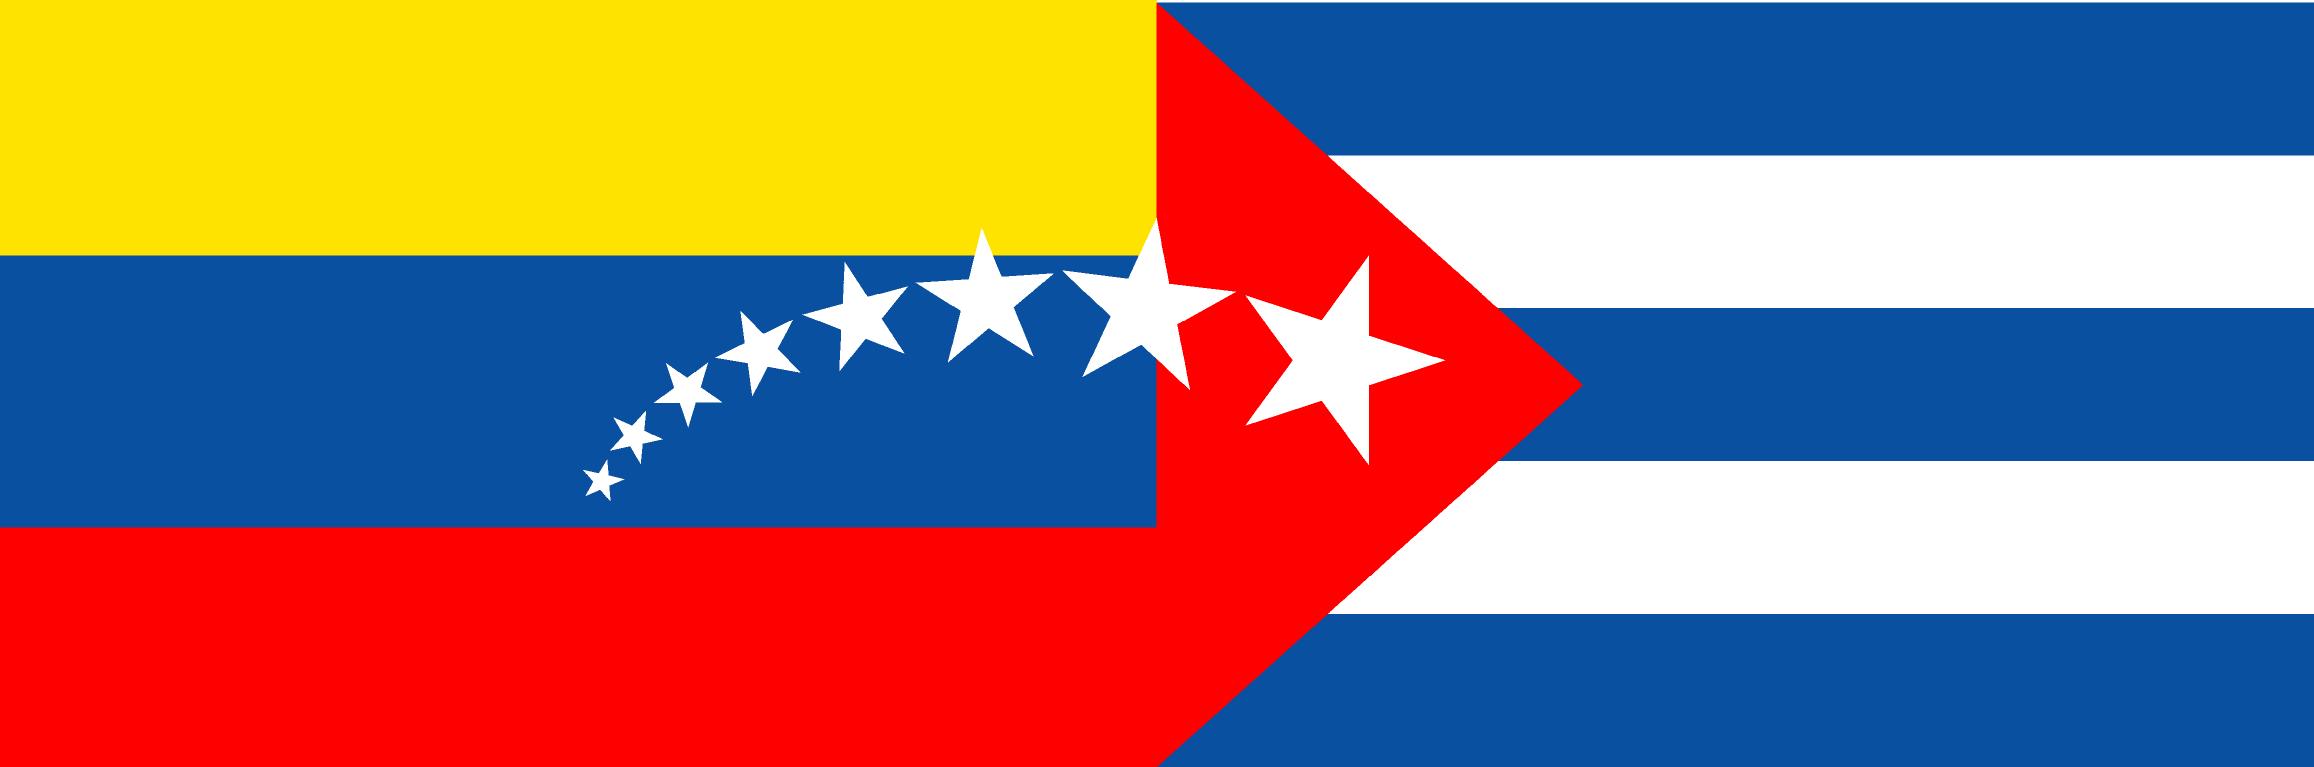 Bandera-Cuba+Venezuela.jpg